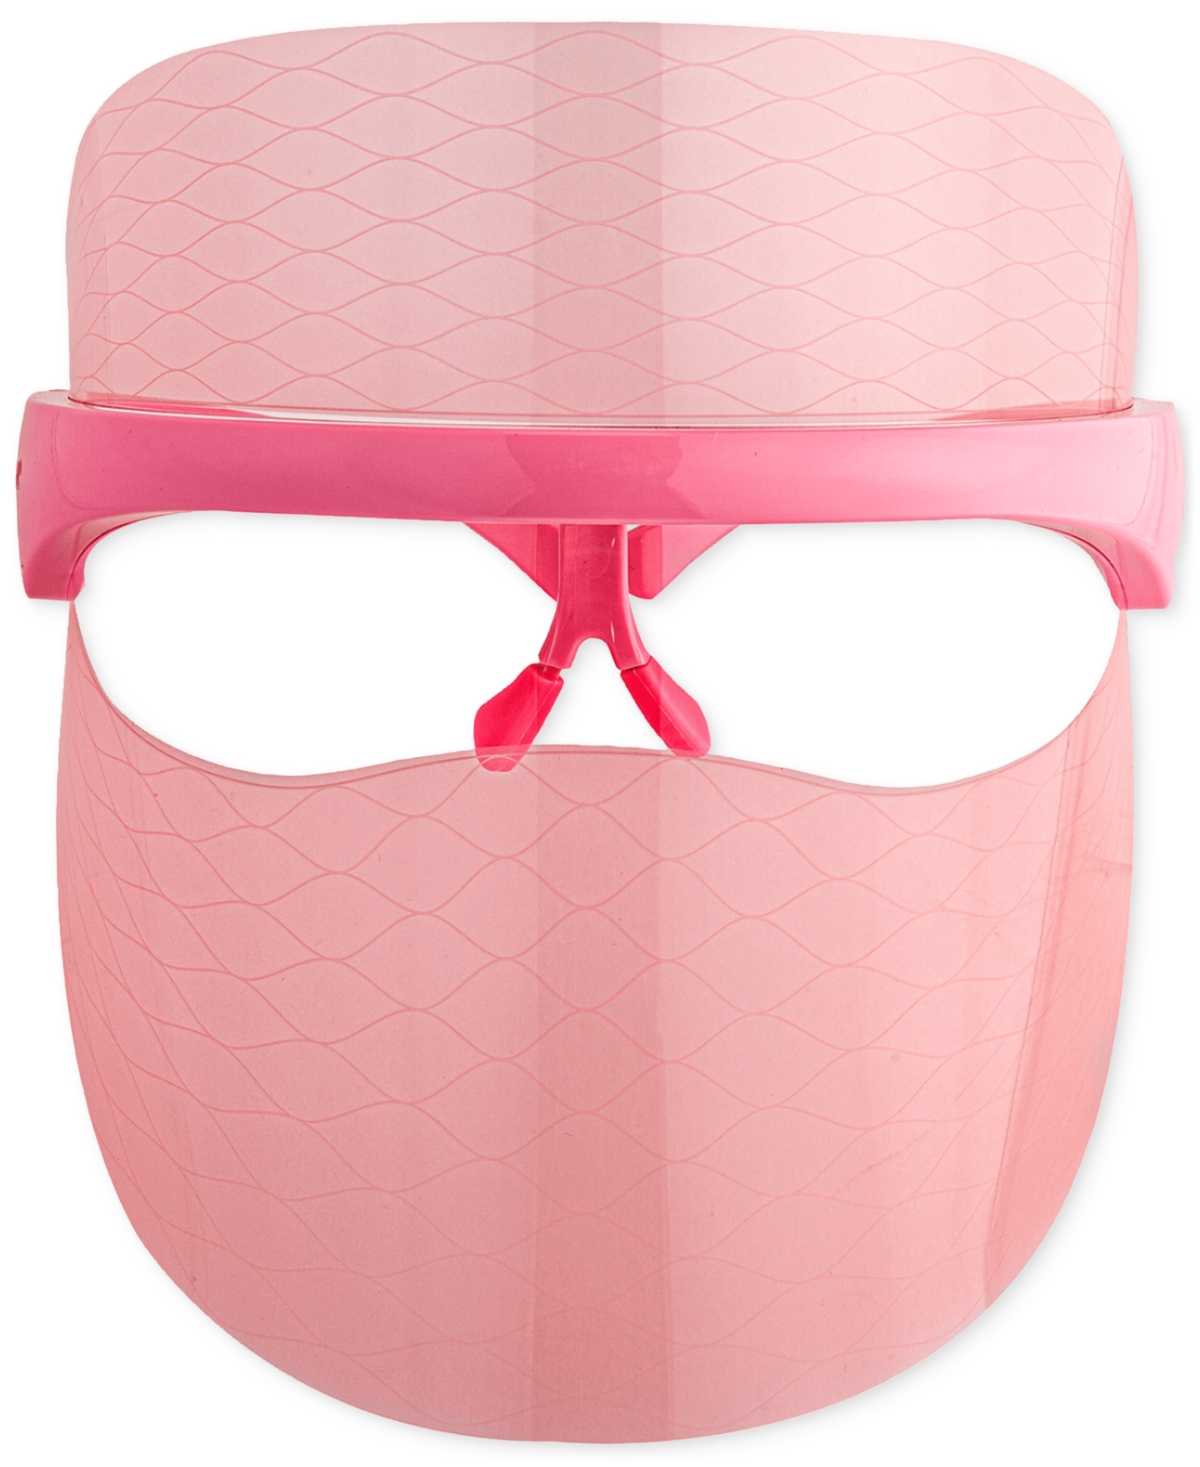 Skin Gym Wrinklit LED Mask